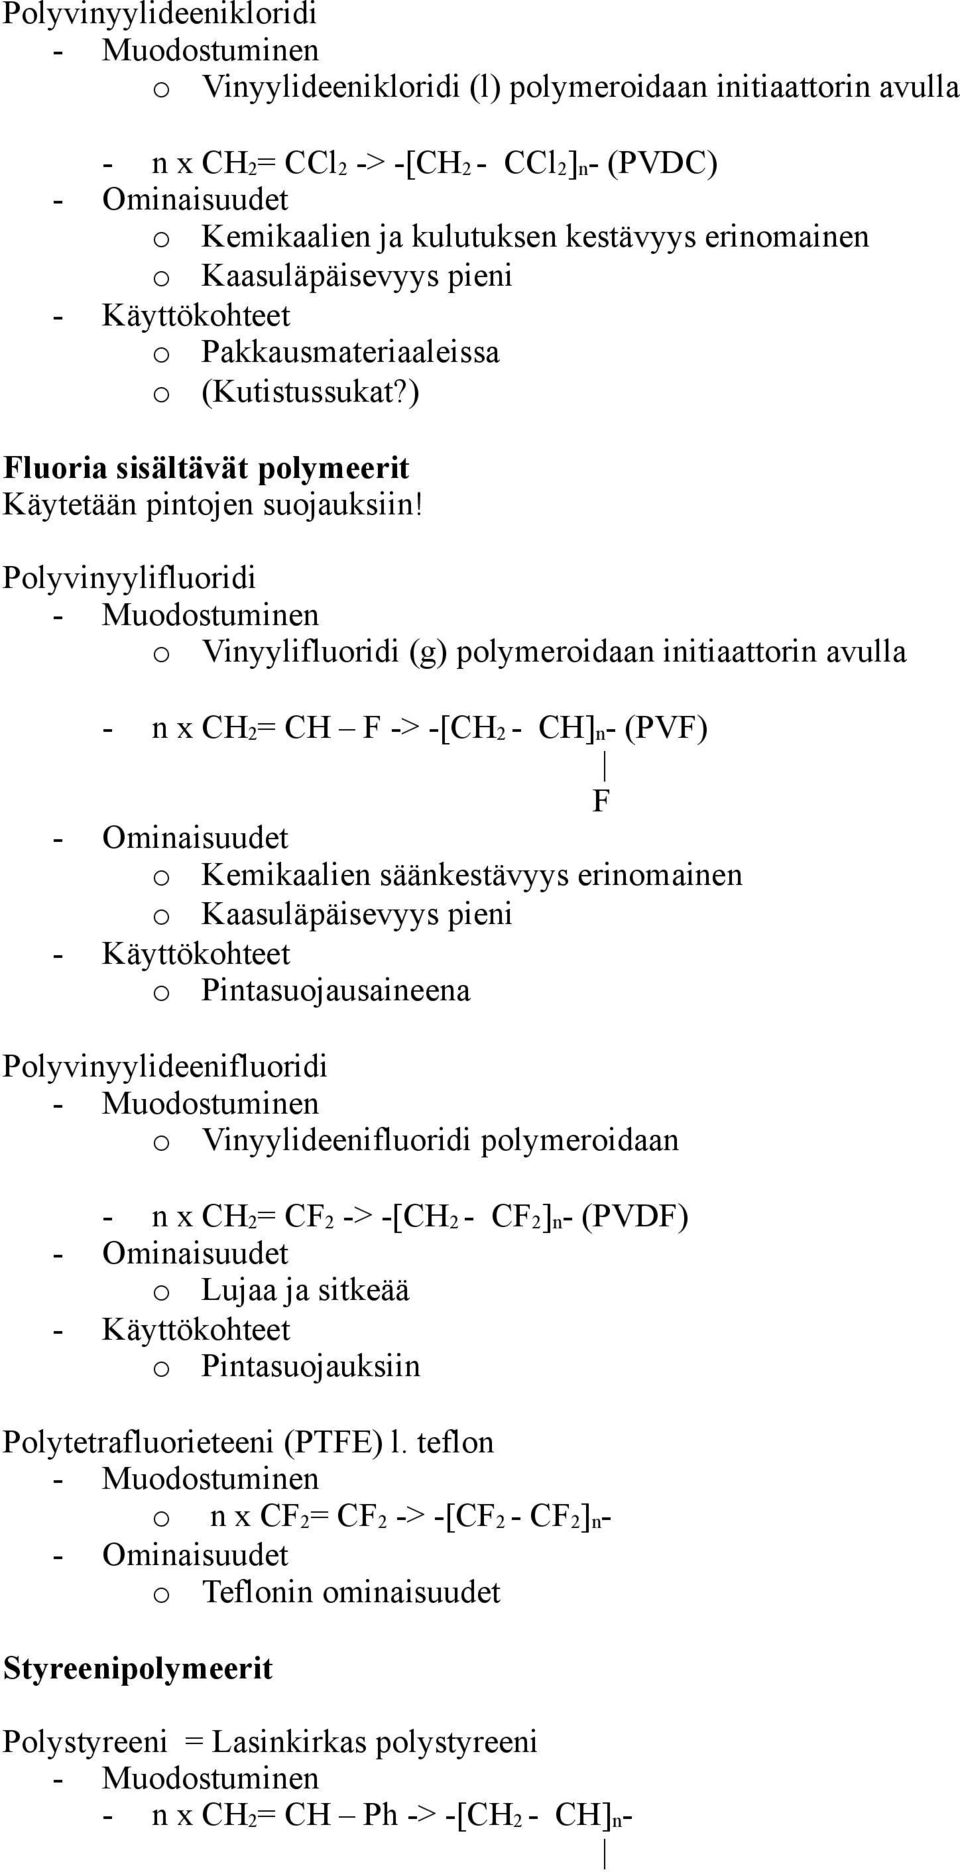 Plyvinyylifluridi Vinyylifluridi (g) plymeridaan initiaattrin avulla - n x CH2= CH F -> -[CH2 - CH]n- (PVF) F Kemikaalien säänkestävyys erinmainen Kaasuläpäisevyys pieni Pintasujausaineena